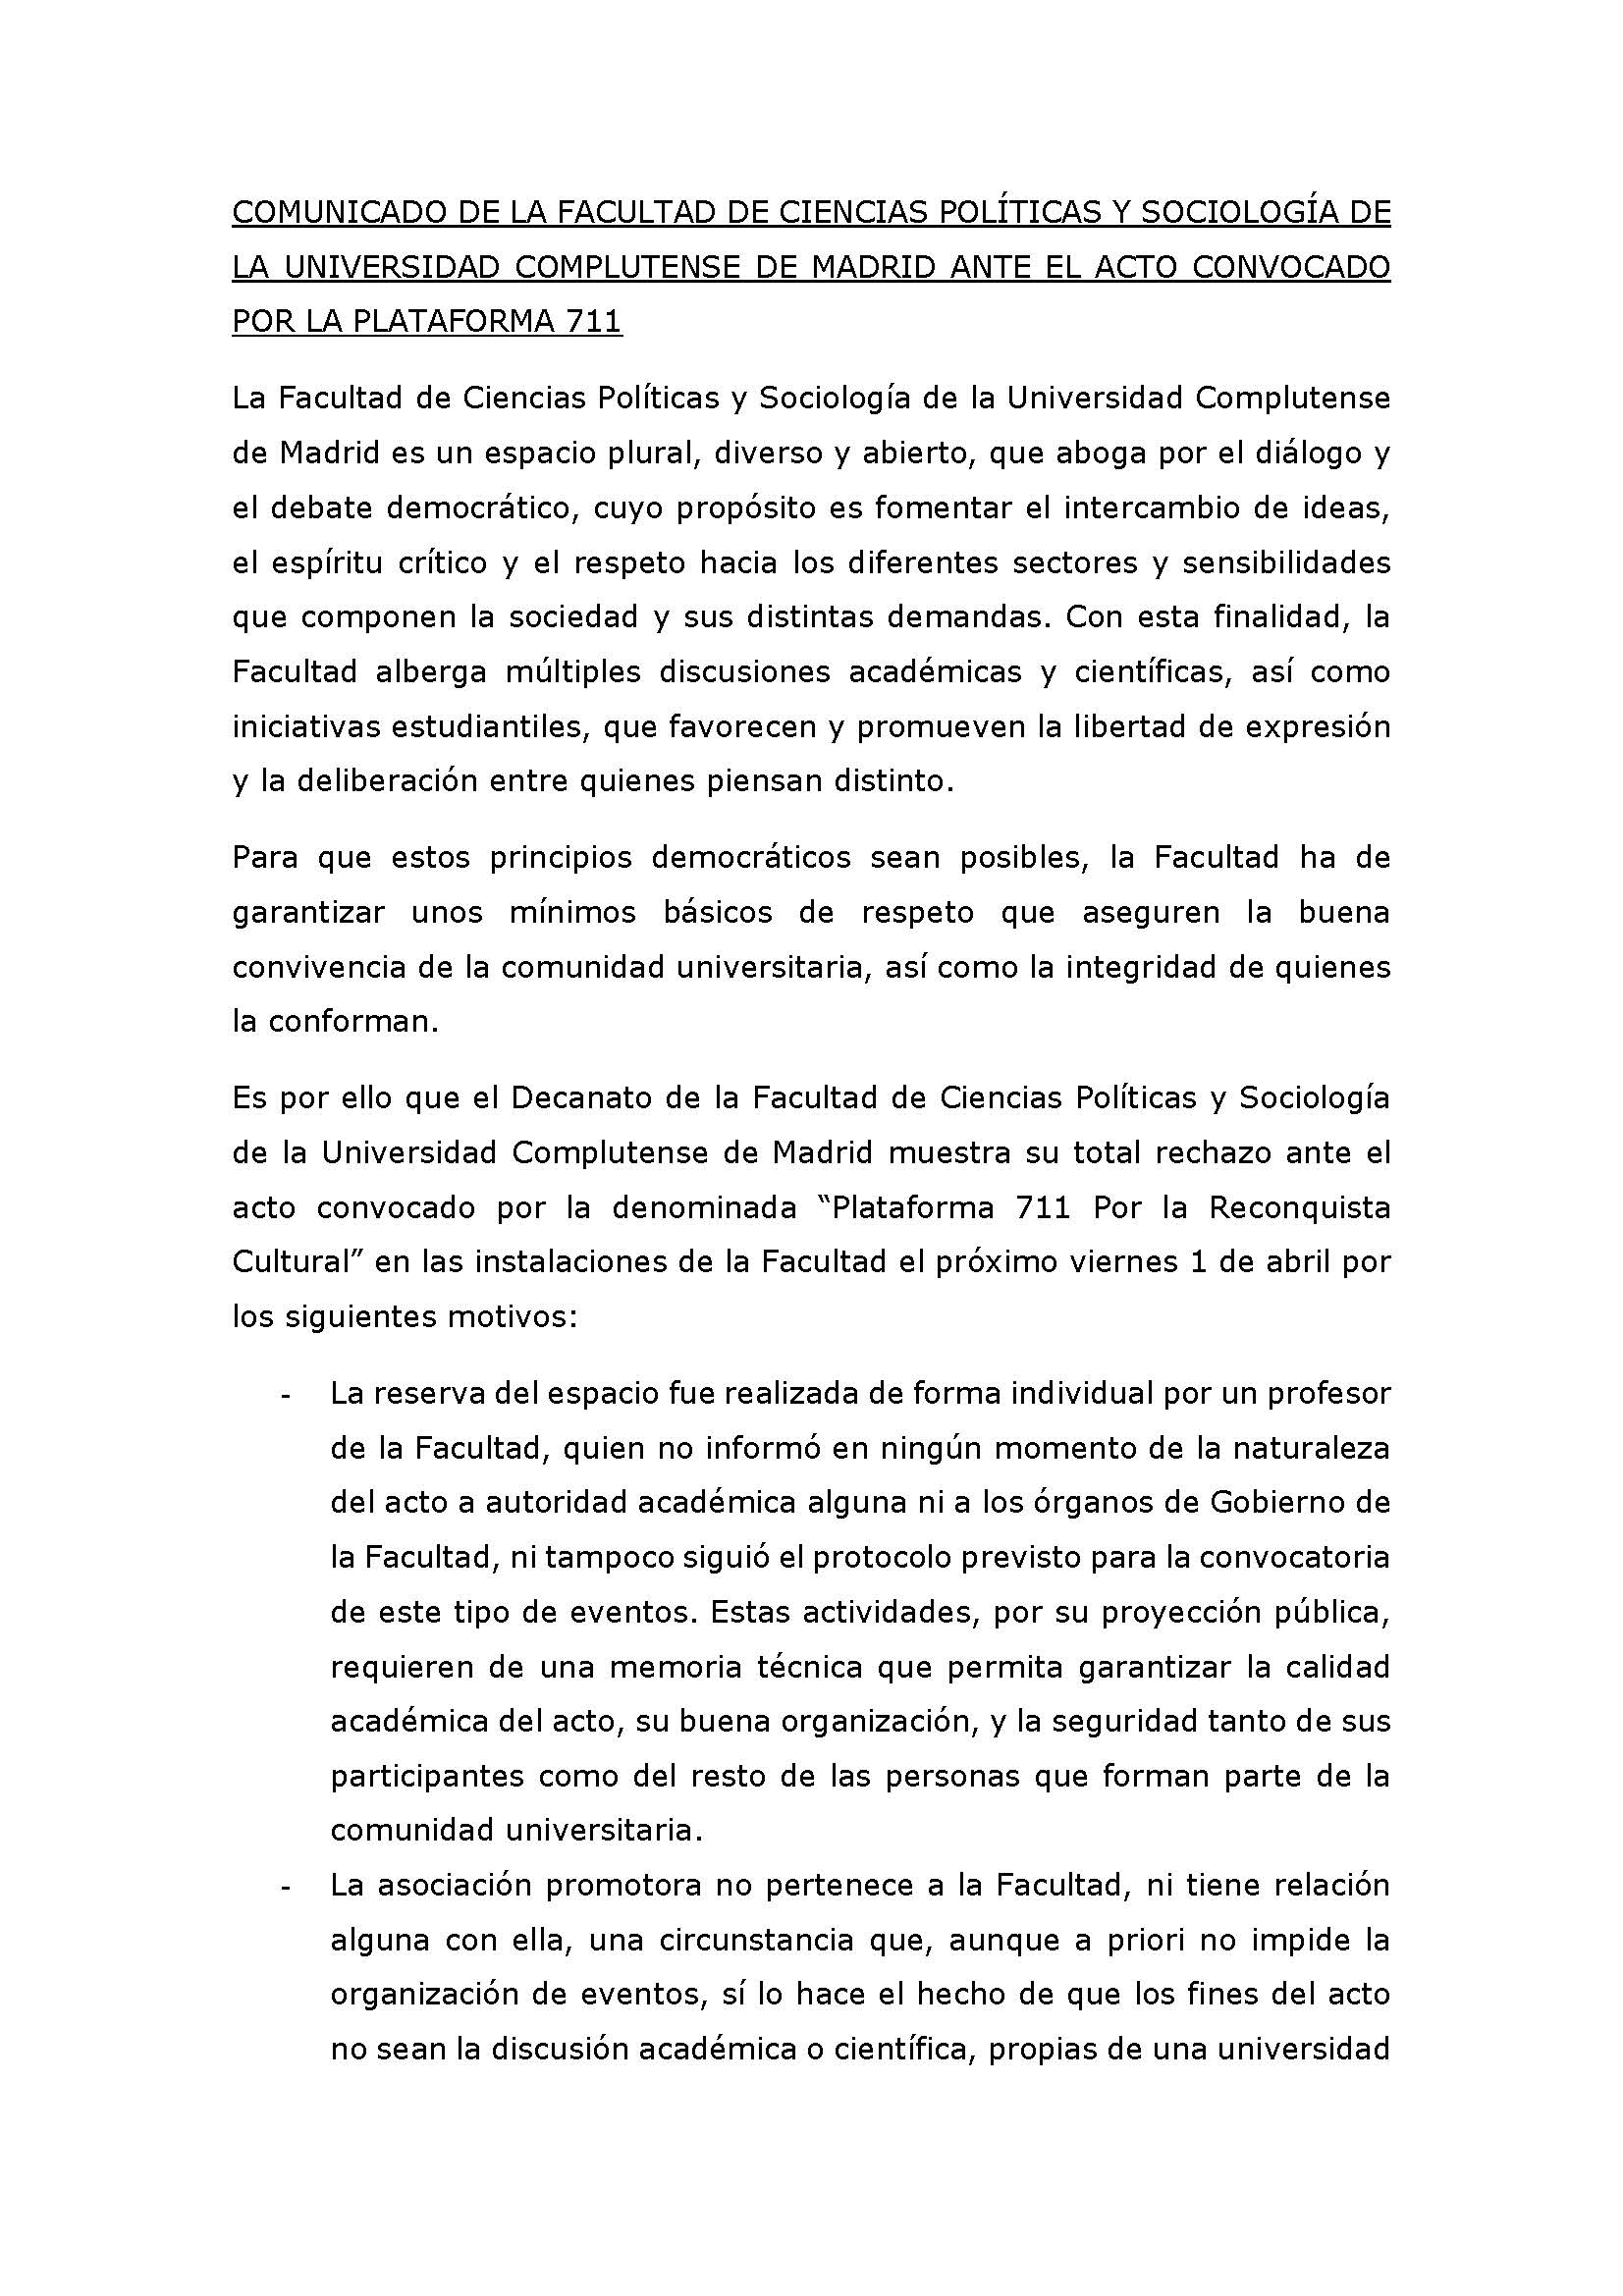 COMUNICADO DE LA FACULTAD DE CIENCIAS POLÍTICAS Y SOCIOLOGÍA DE LA UNIVERSIDAD COMPLUTENSE DE MADRID - 1